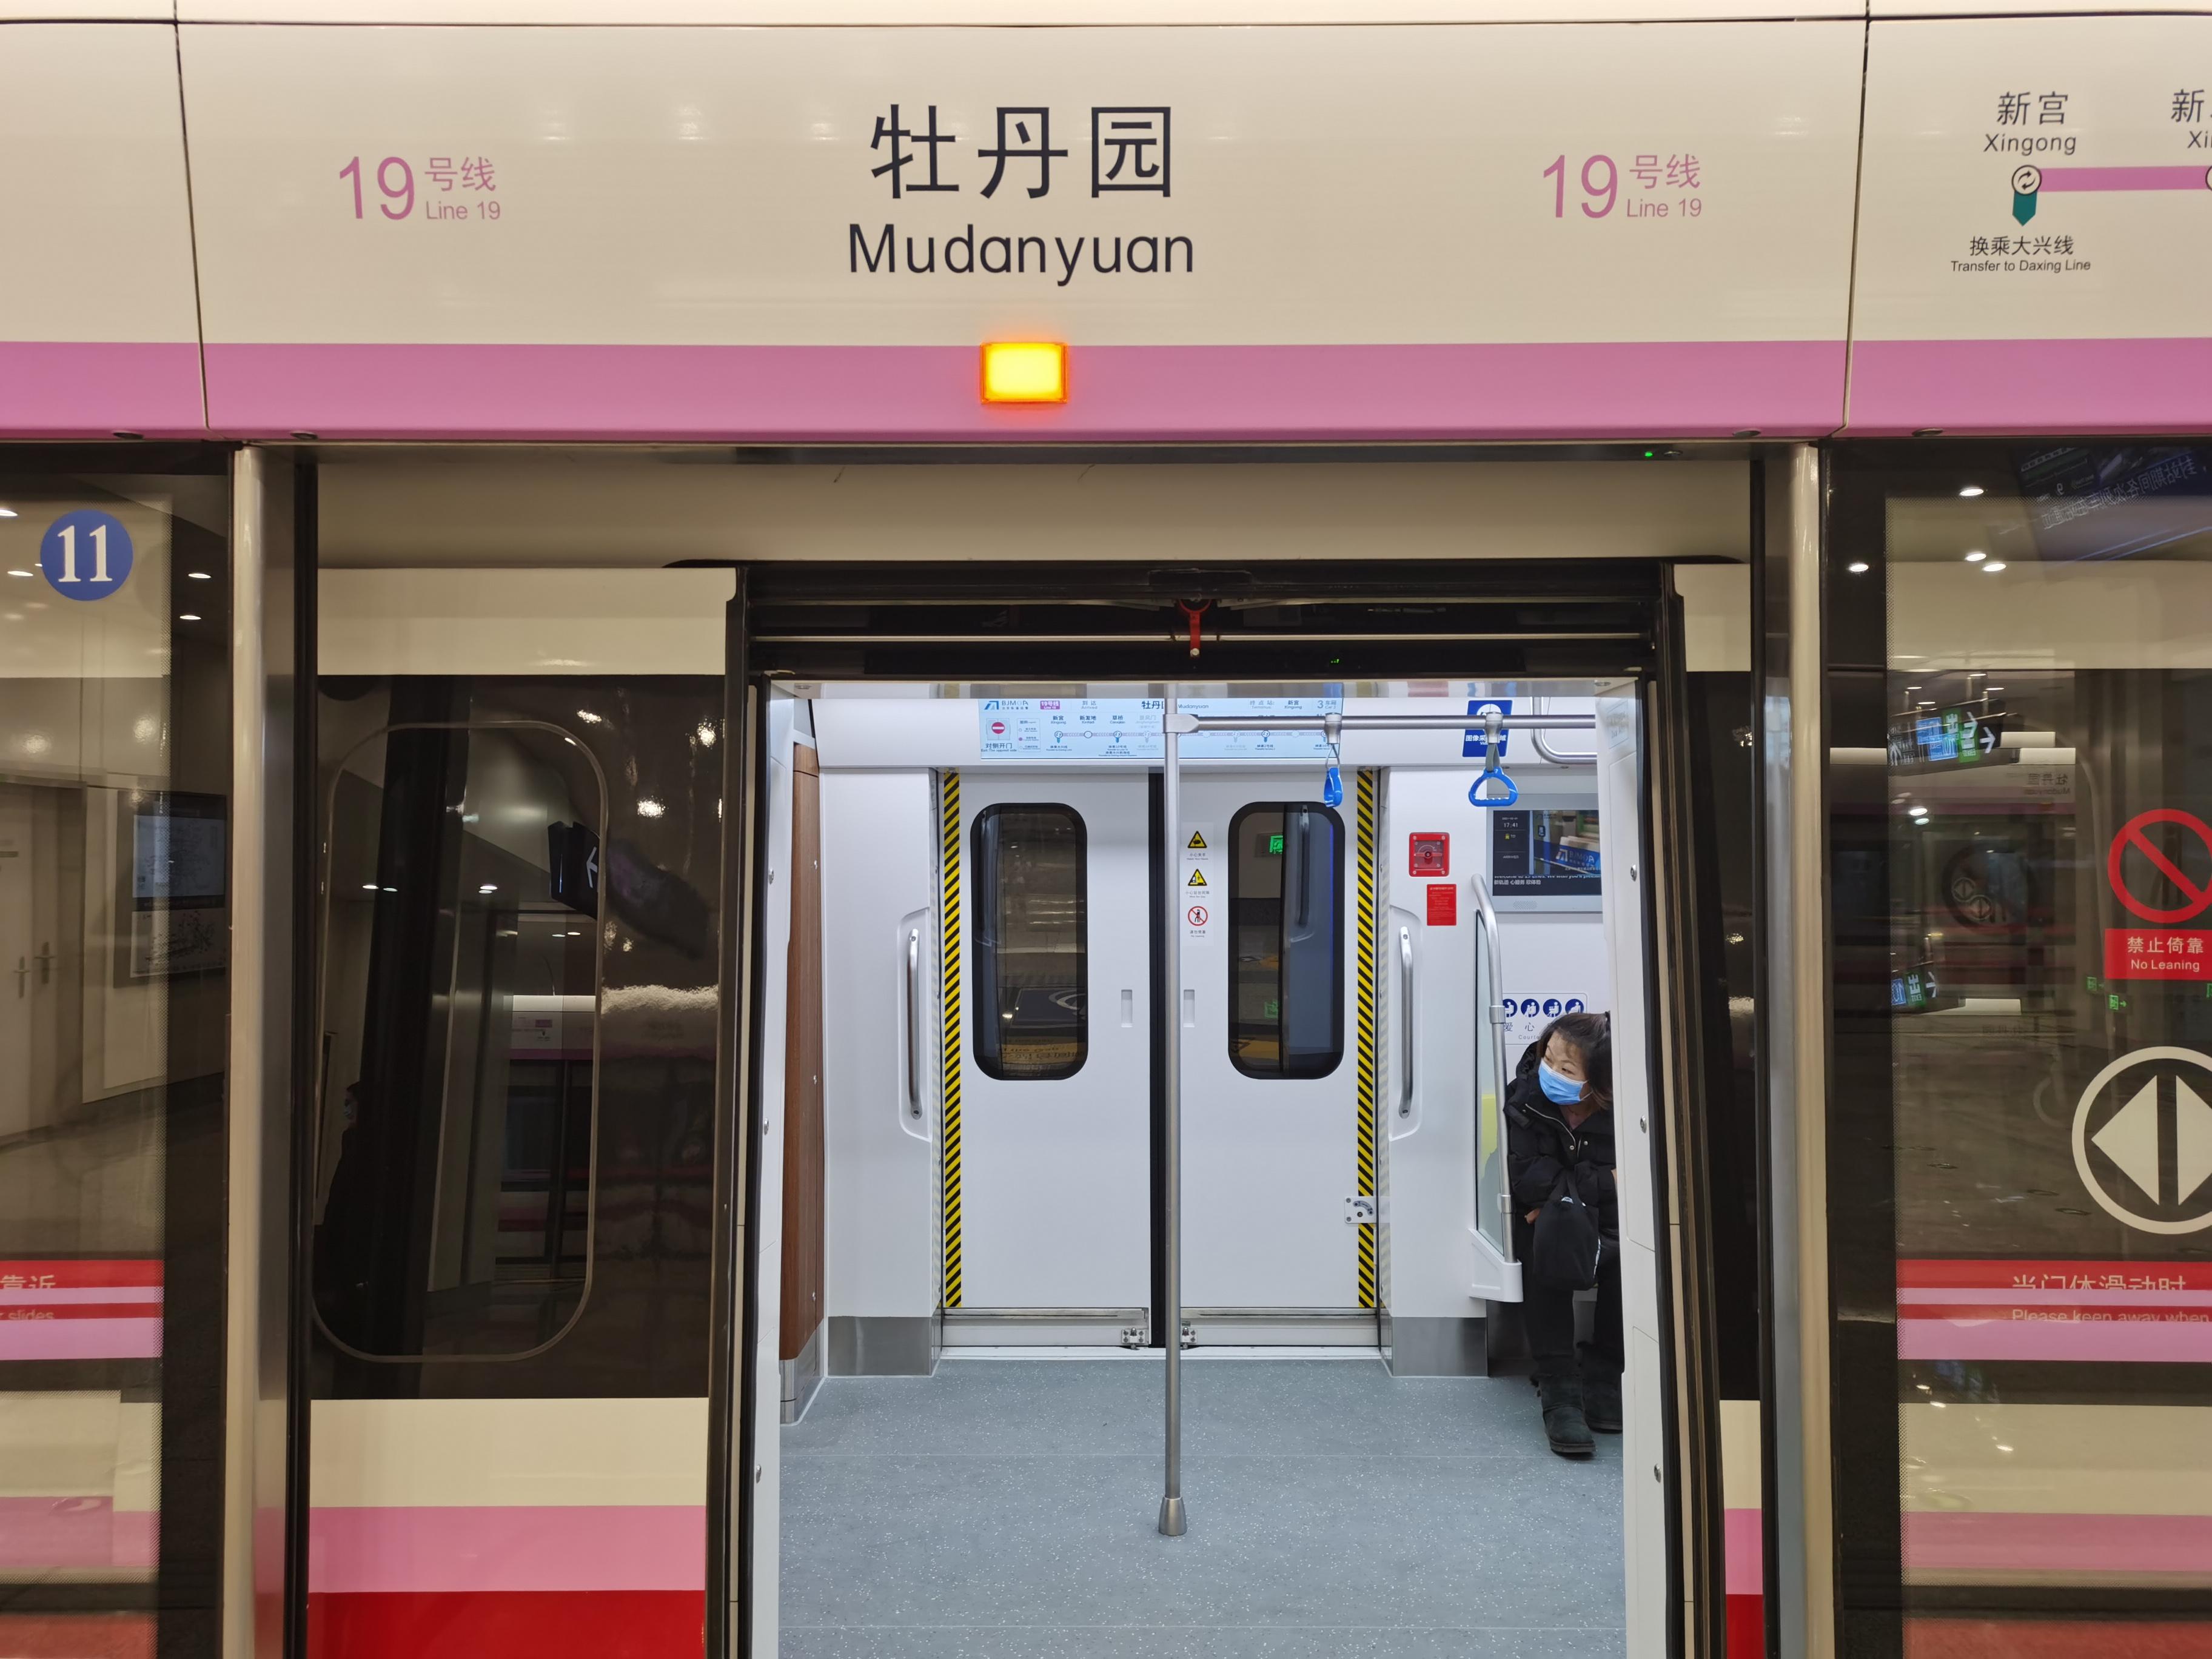 地铁快线的曙光——北京地铁17/19号线运转(上61穿越南北)